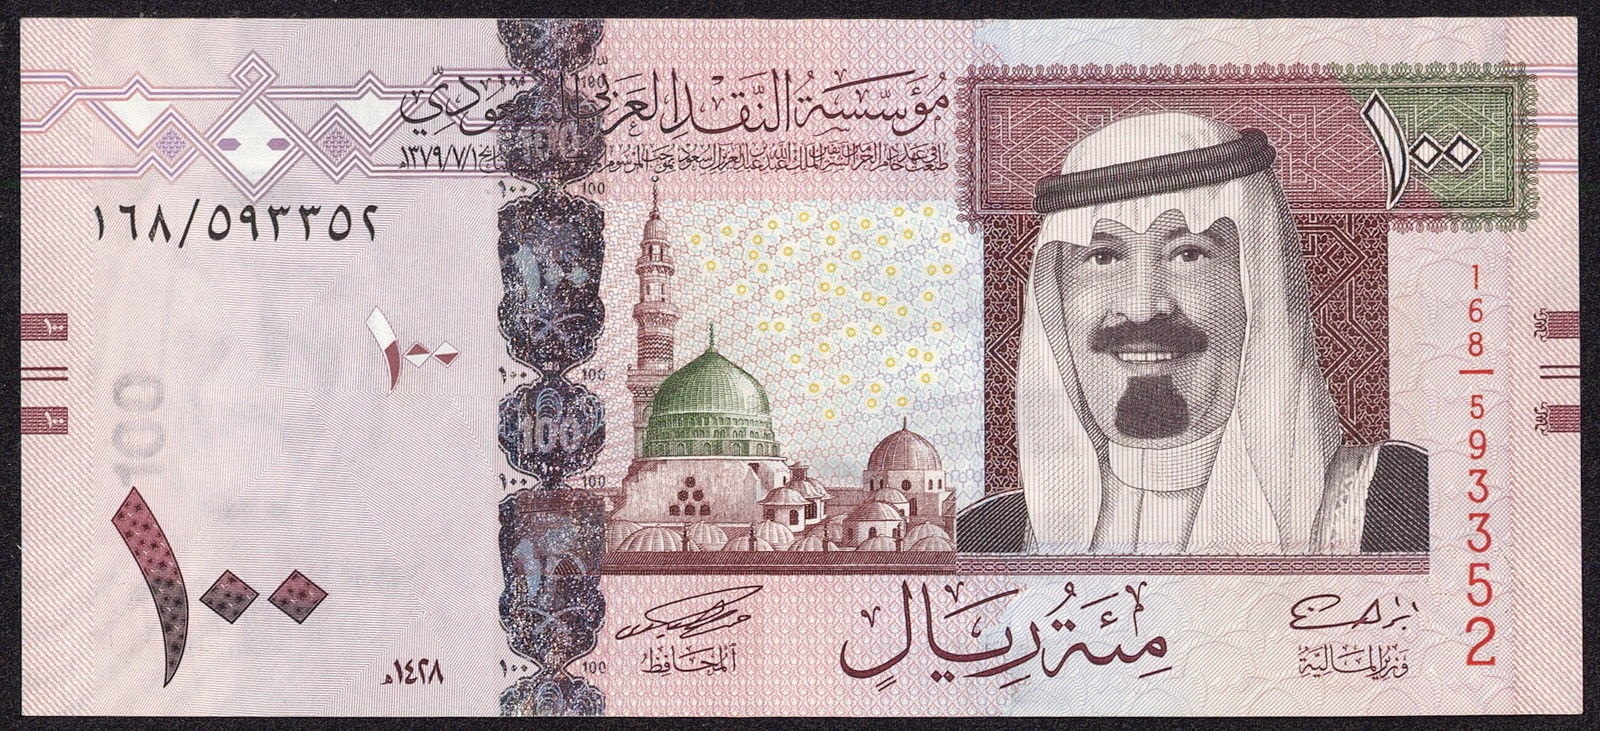 سعر الريال السعودي اليوم السبت 18/1/2020 في البنوك المختلفة مقابل الجنيه المصري